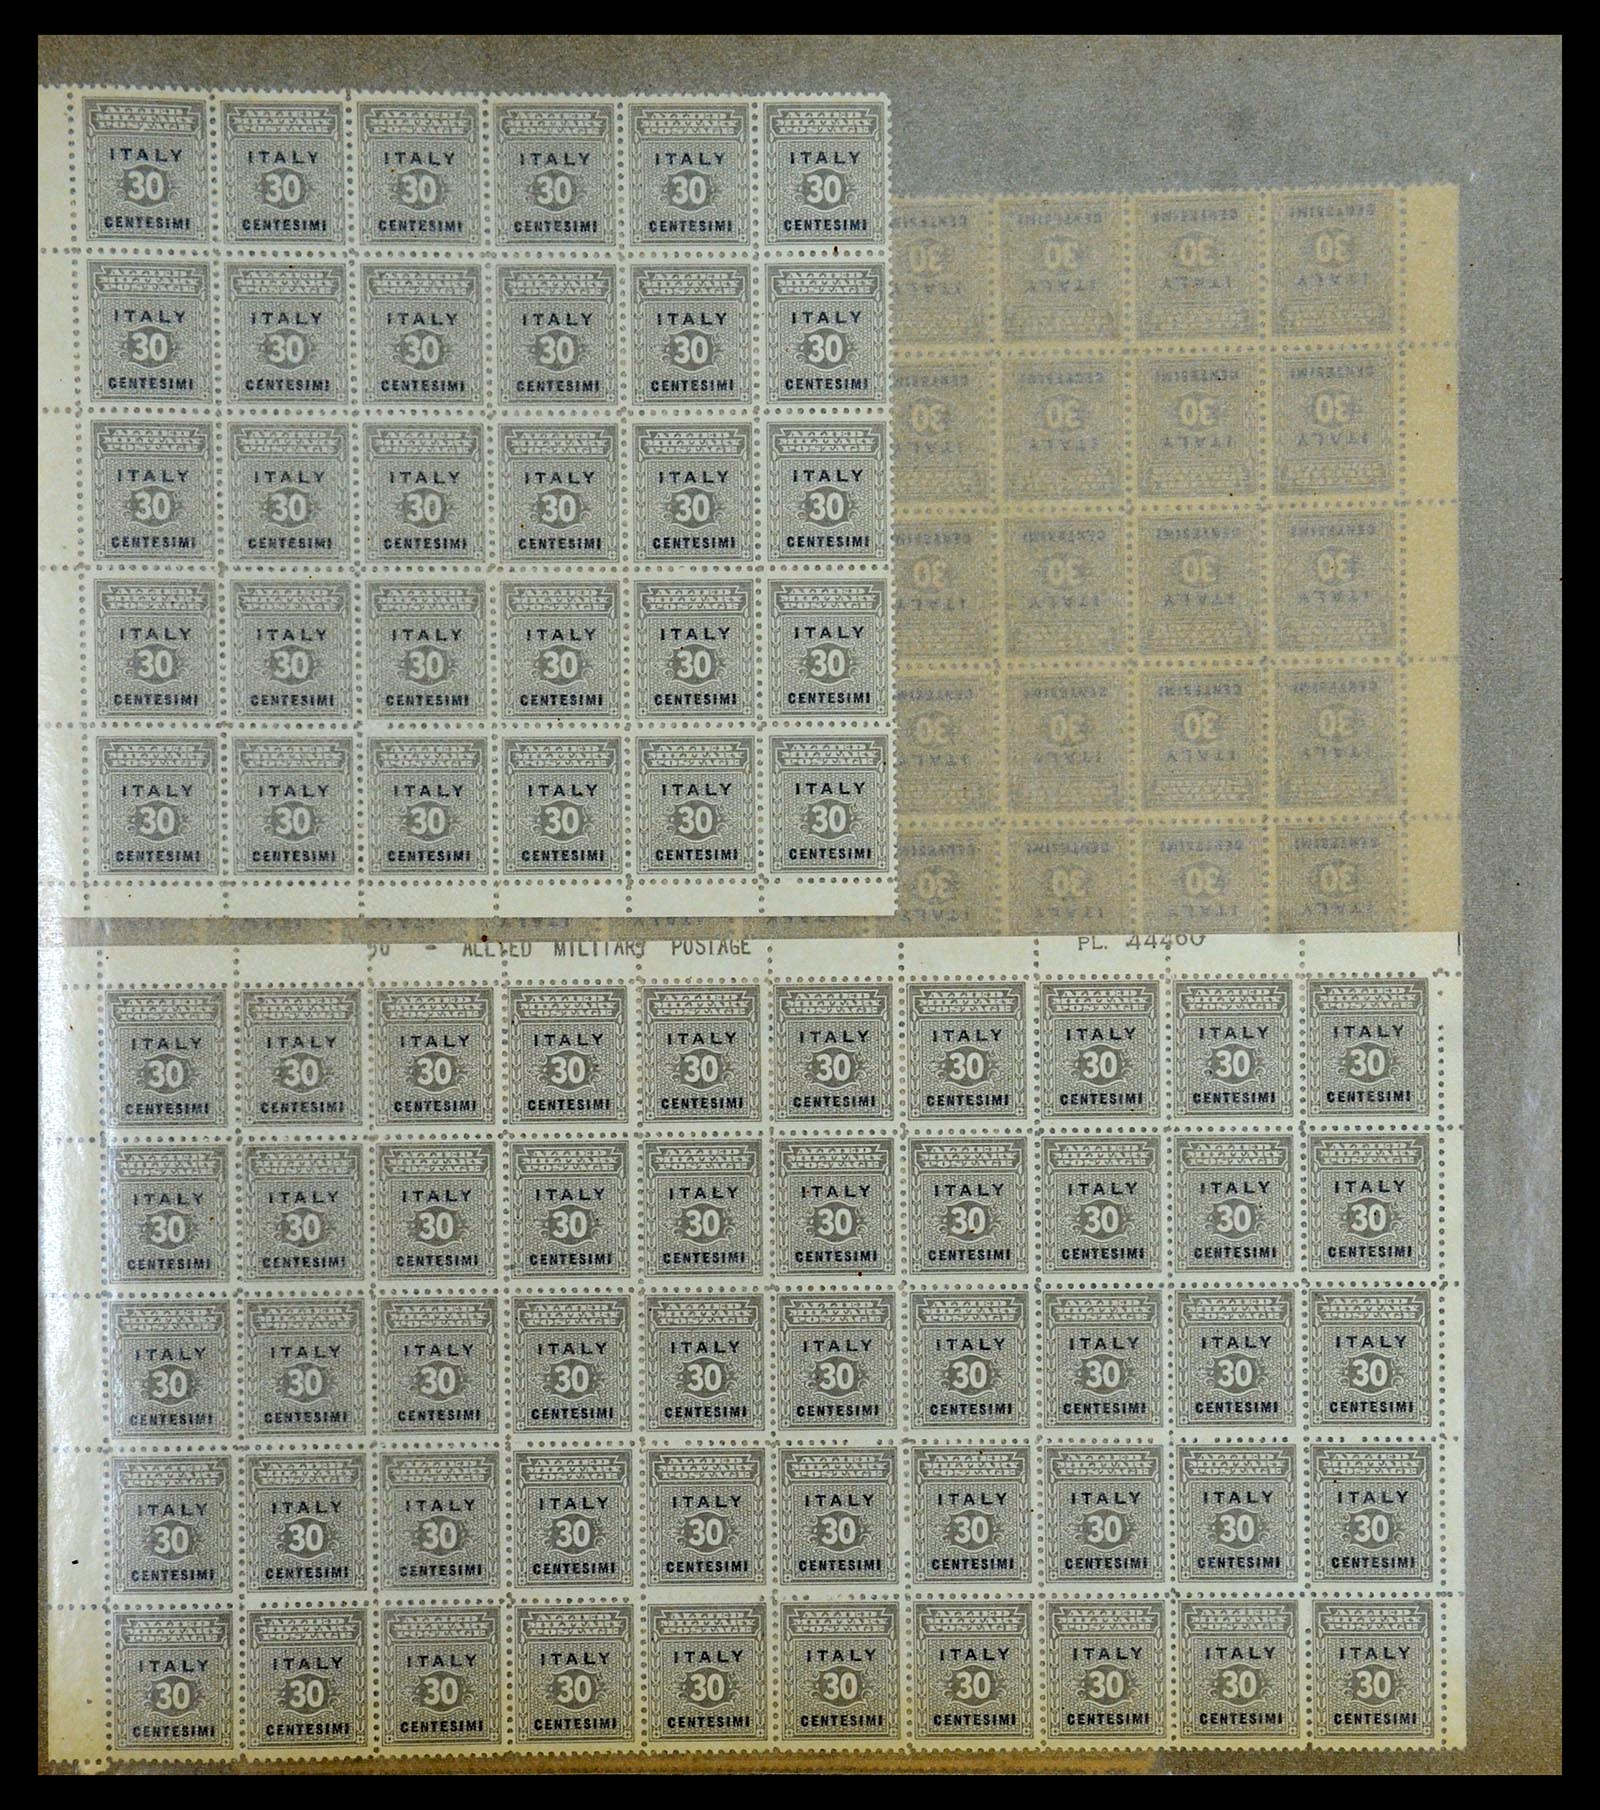 36313 132 - Postzegelverzameling 36313 Wereld uitzoekpartij 1850-1950.